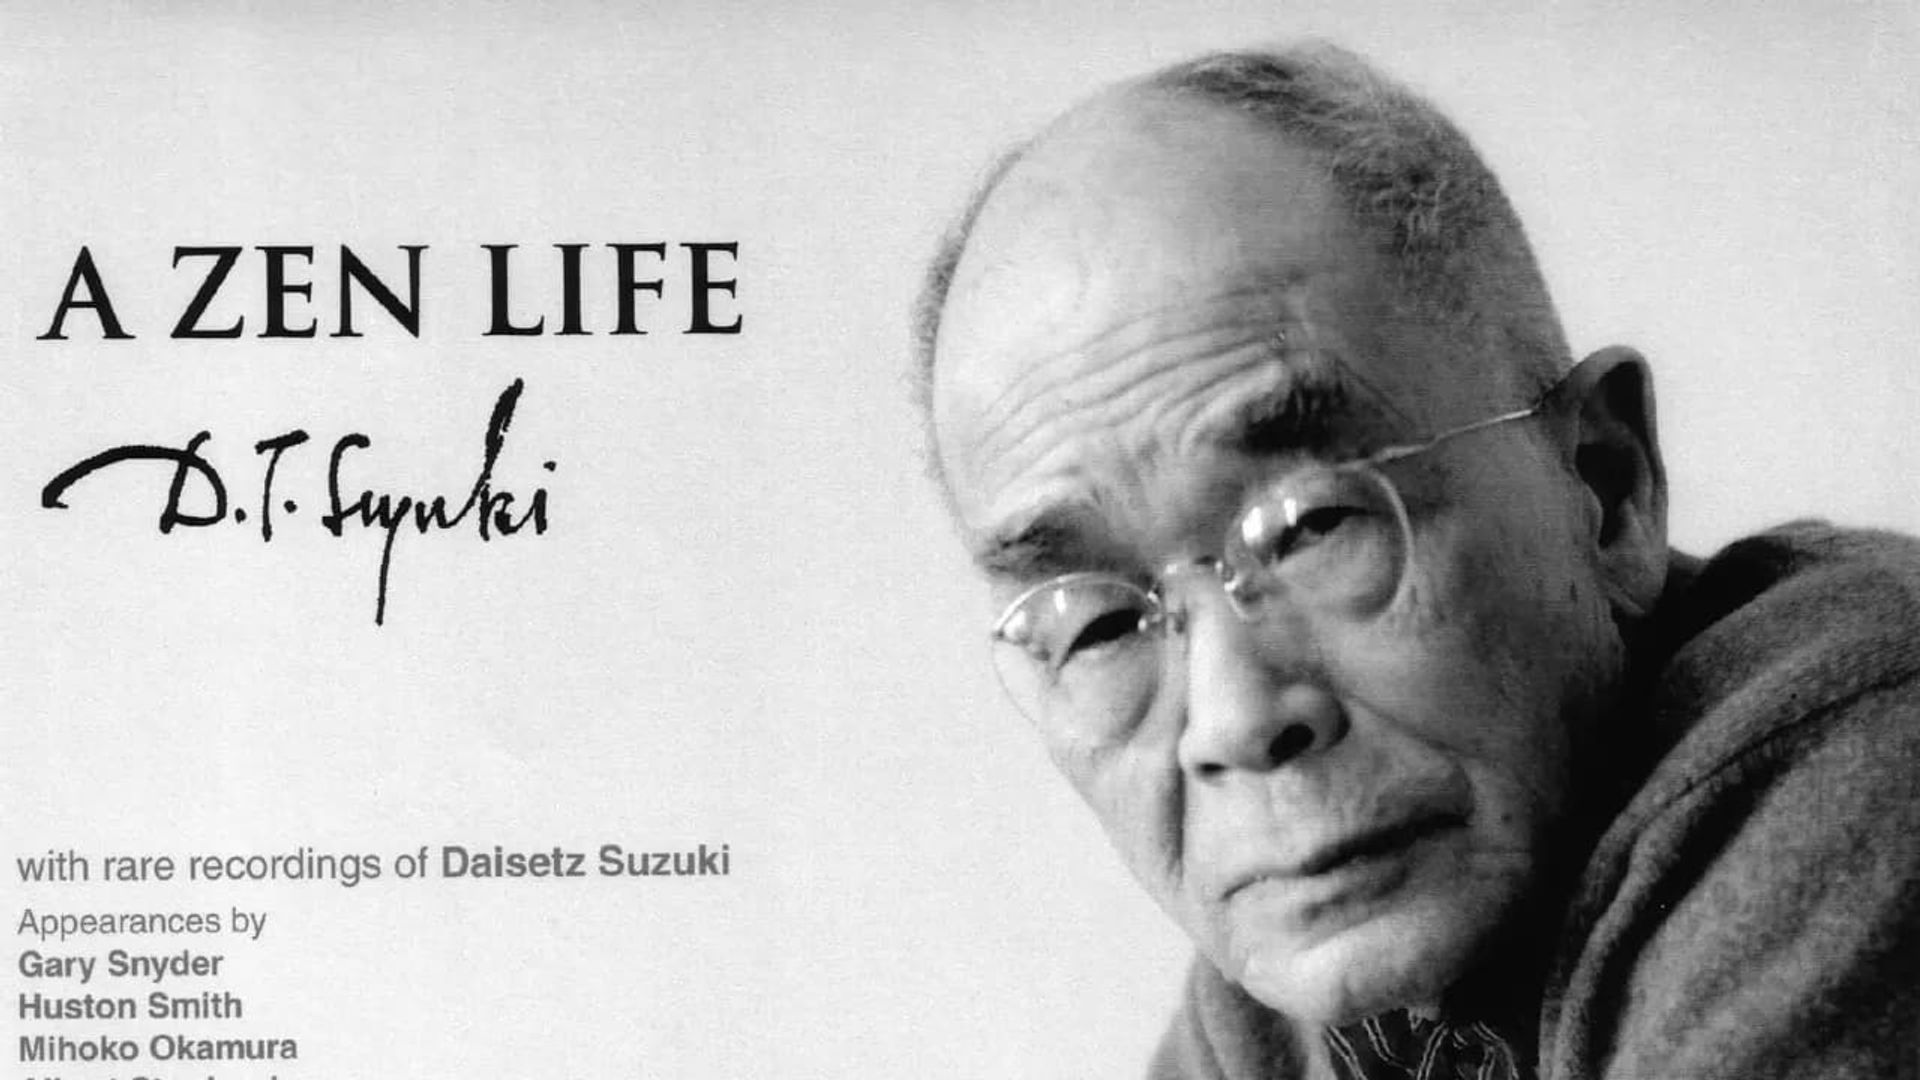 A Zen Life: D.T. Suzuki background